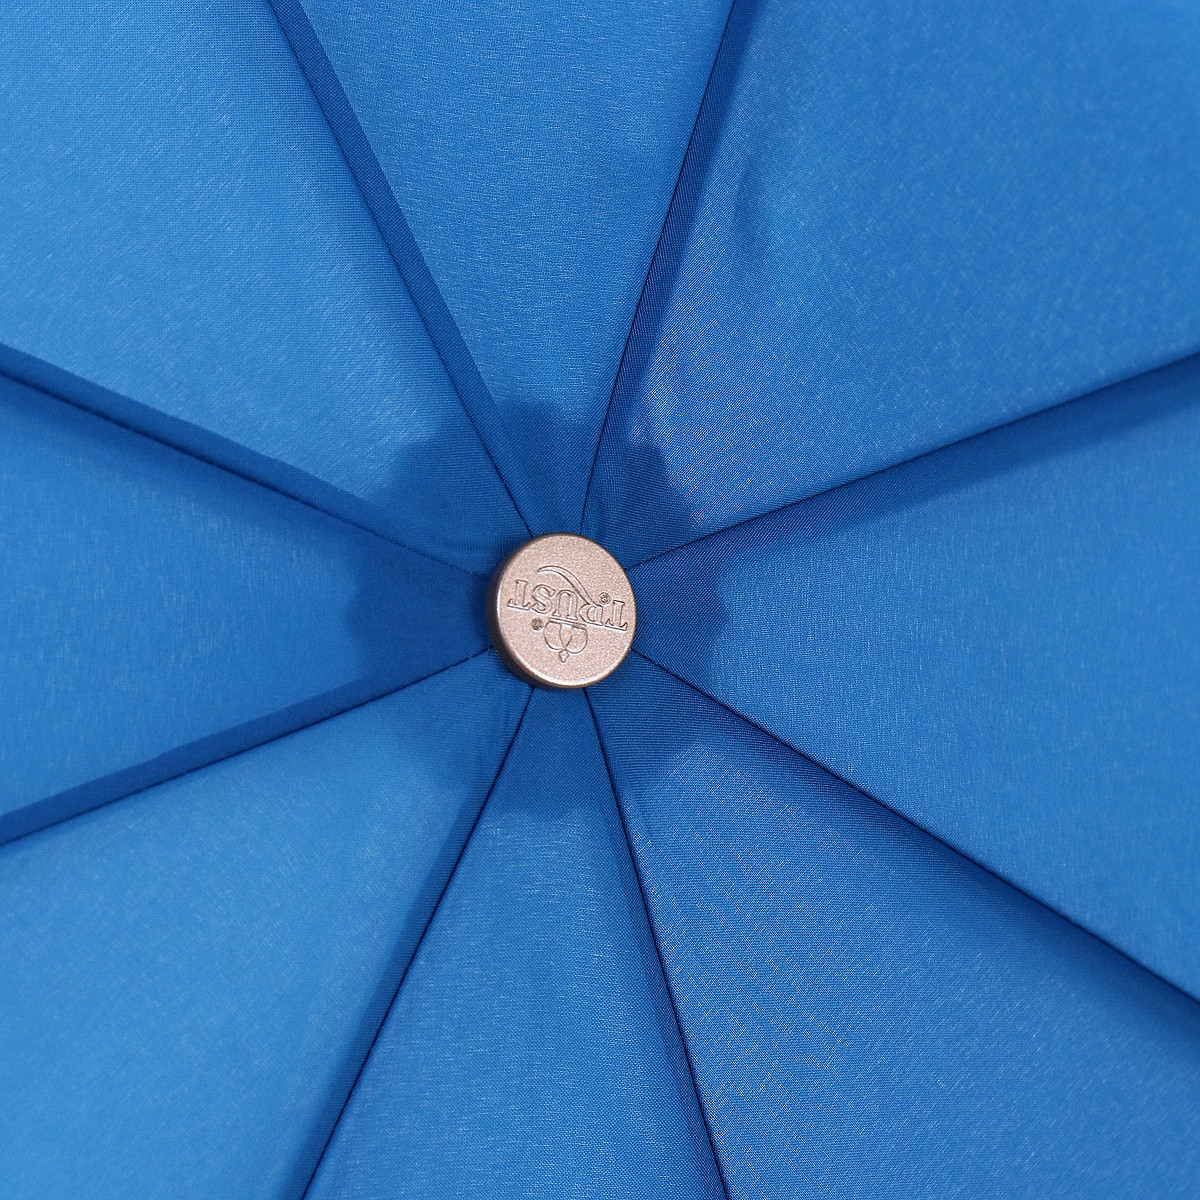 Женский складной зонтик полный автомат Trust 102 см разноцветный - фото 5